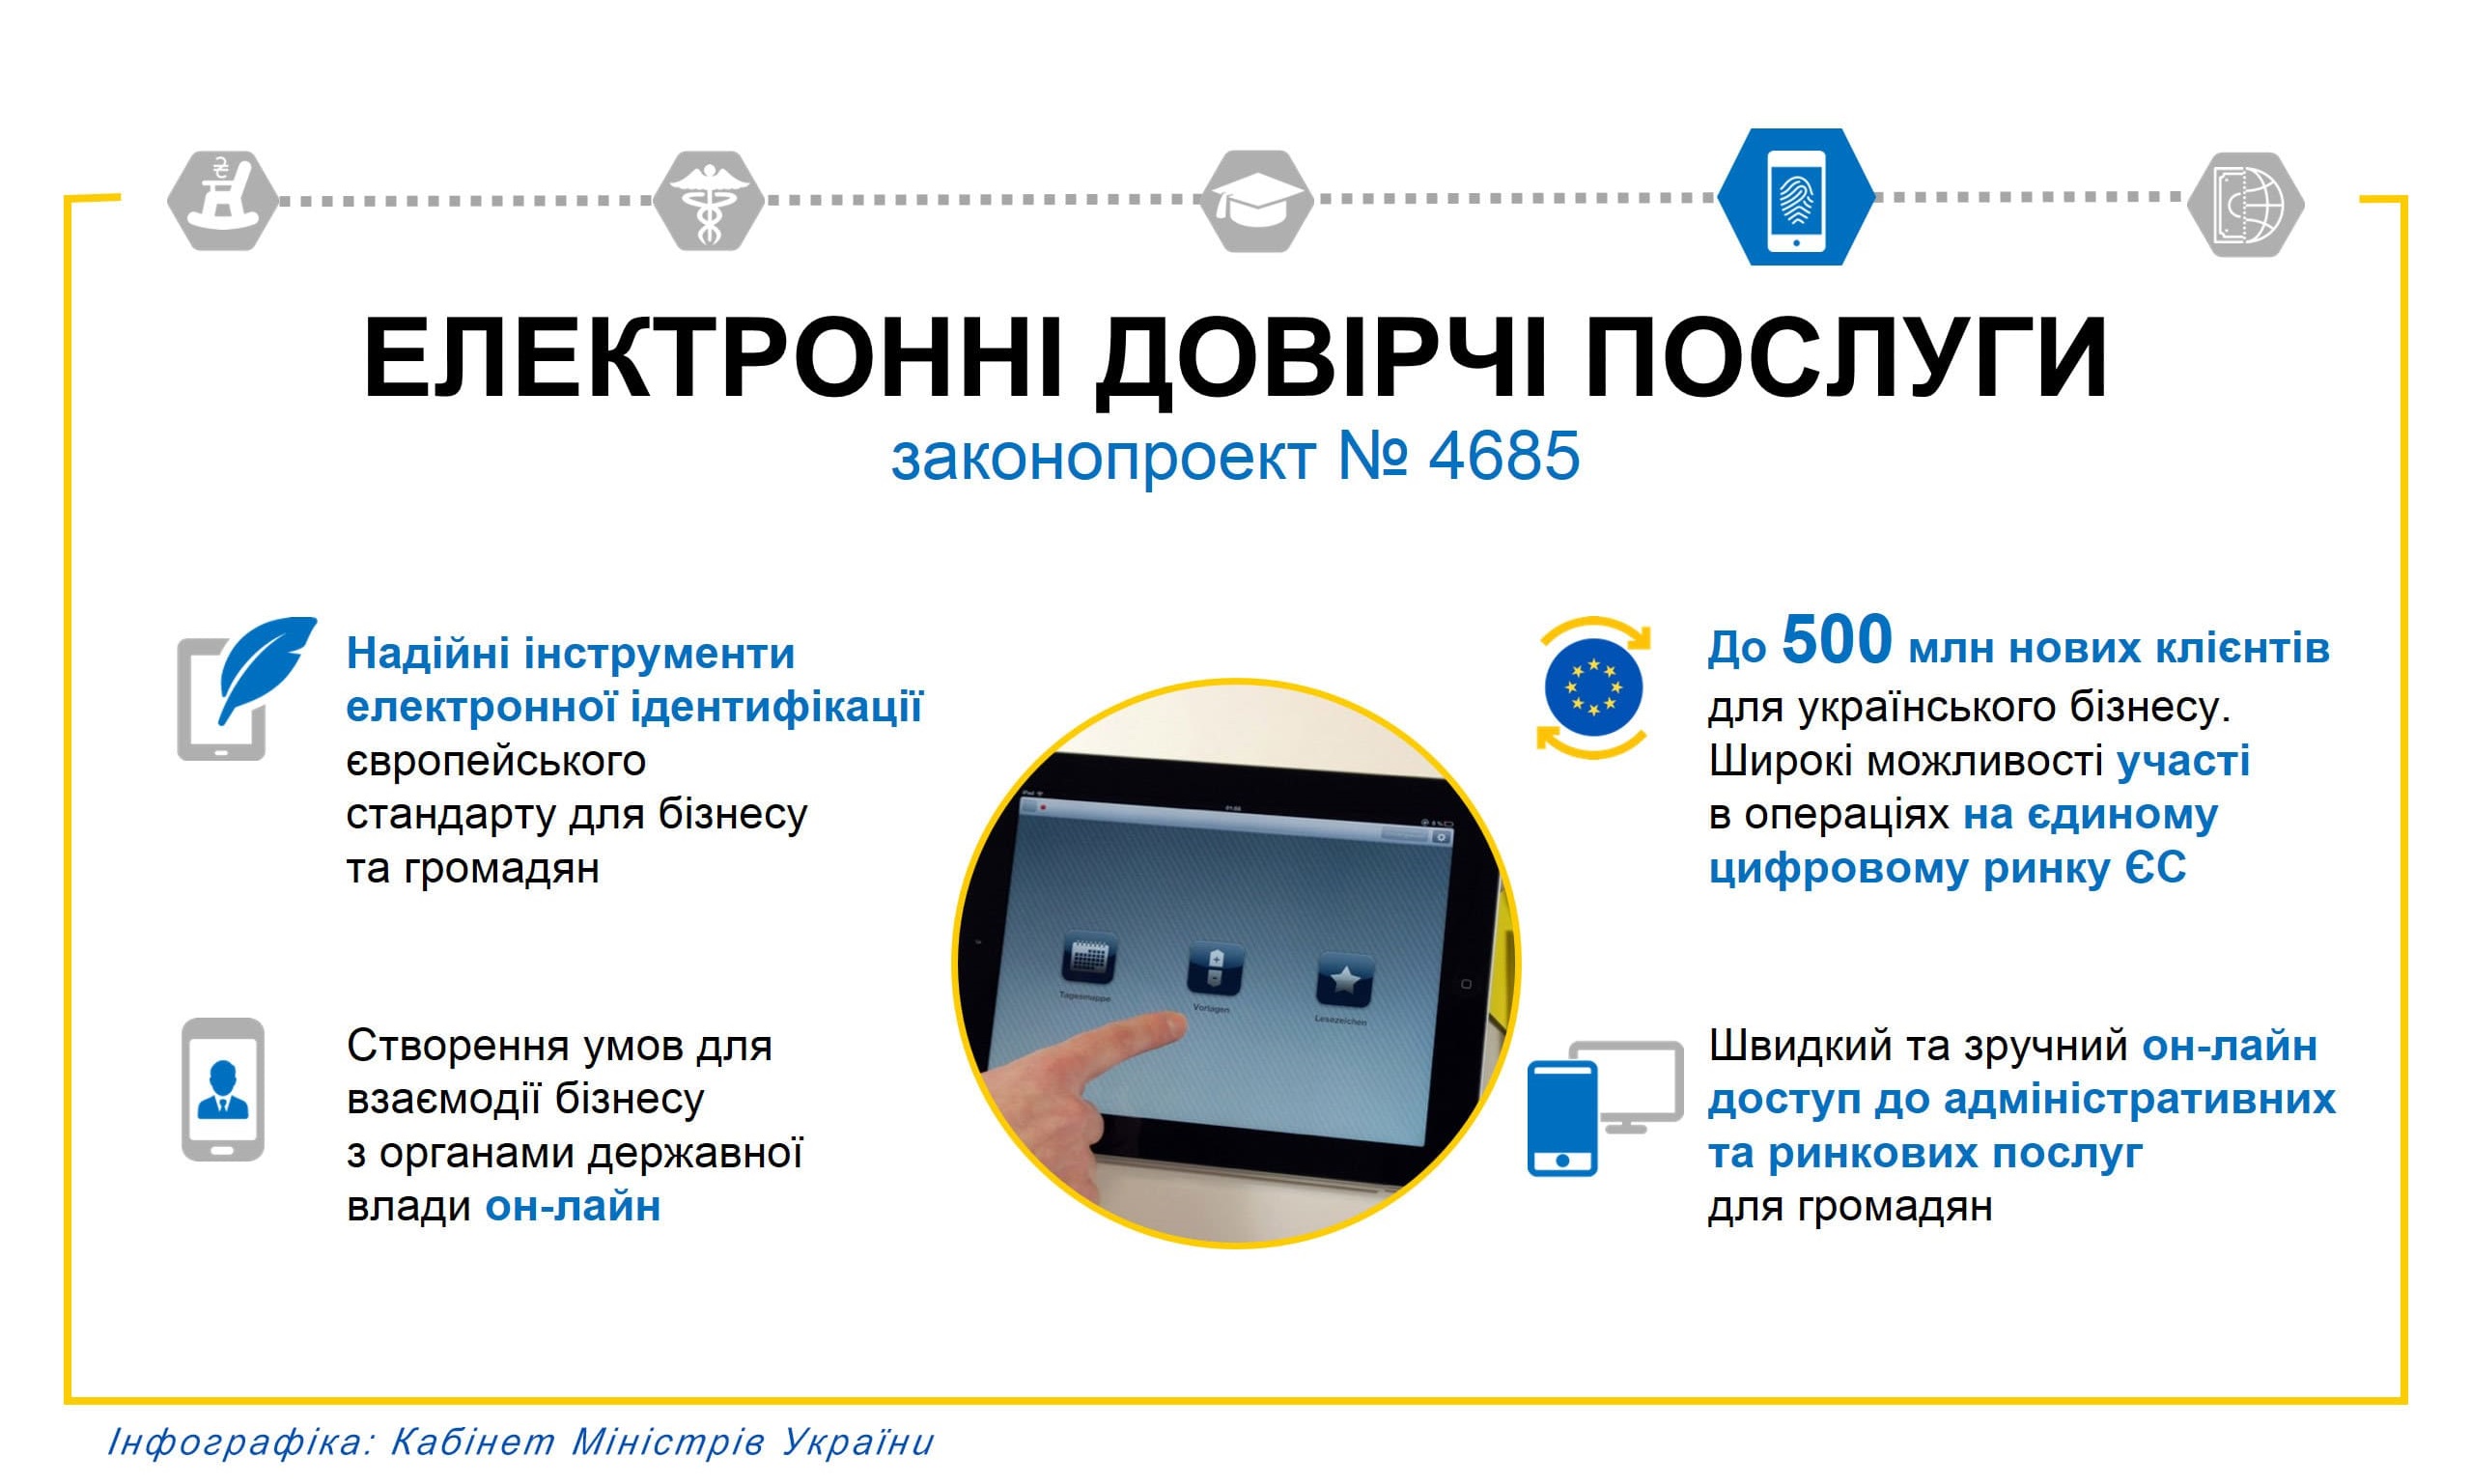 Дрогобицька ОДПІ: Про отримання електронних довірчих послуг